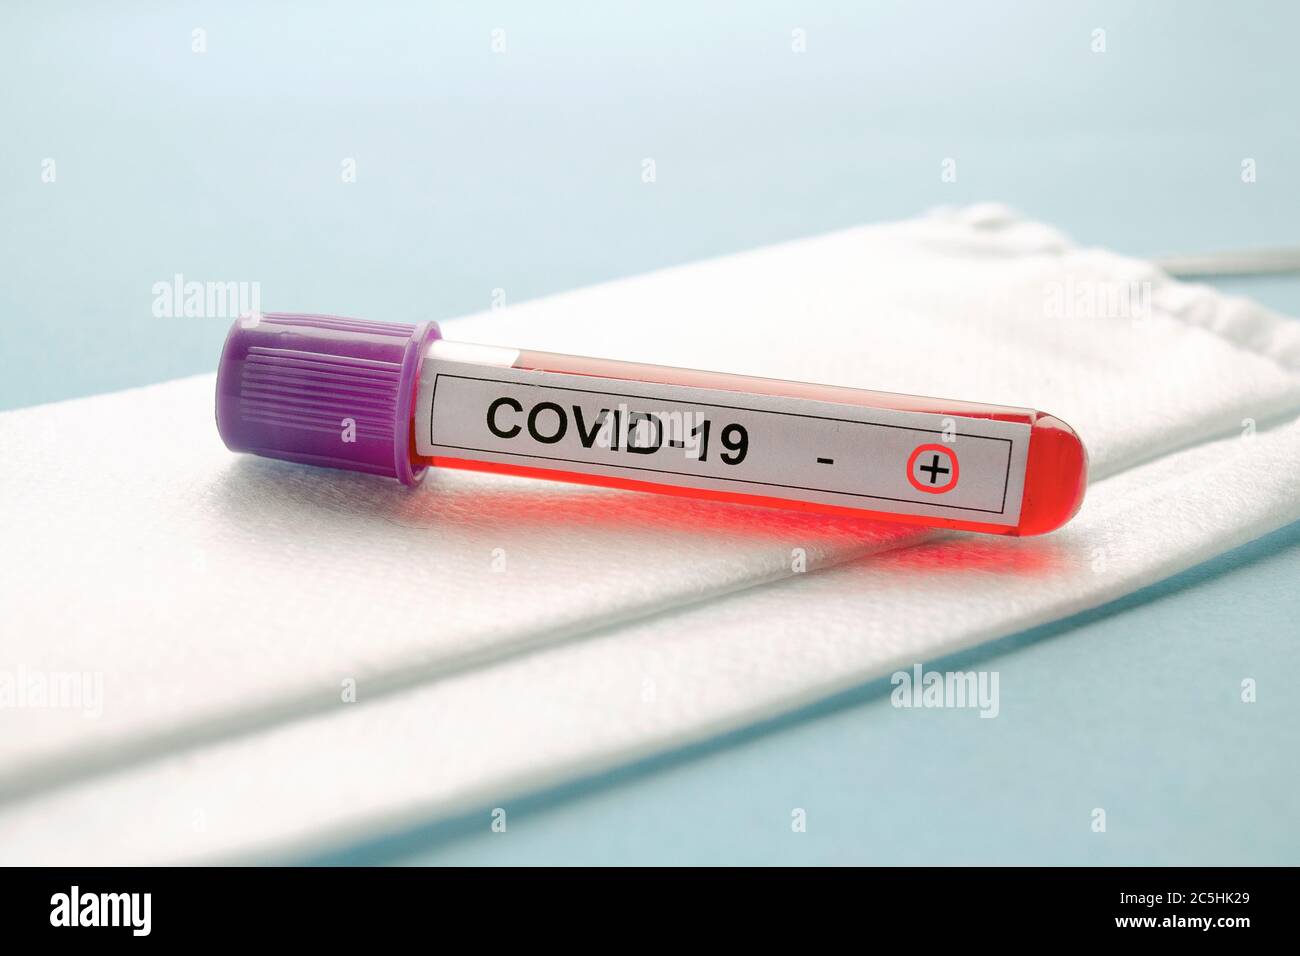 Resultado positivo de la prueba COVID-19, nuevo coronavirus 2019 encontrado en Wuhan, China. Estudio de laboratorio de una muestra de sangre en COVID-19. Pruebas para 2019-nCoV. Foto de stock